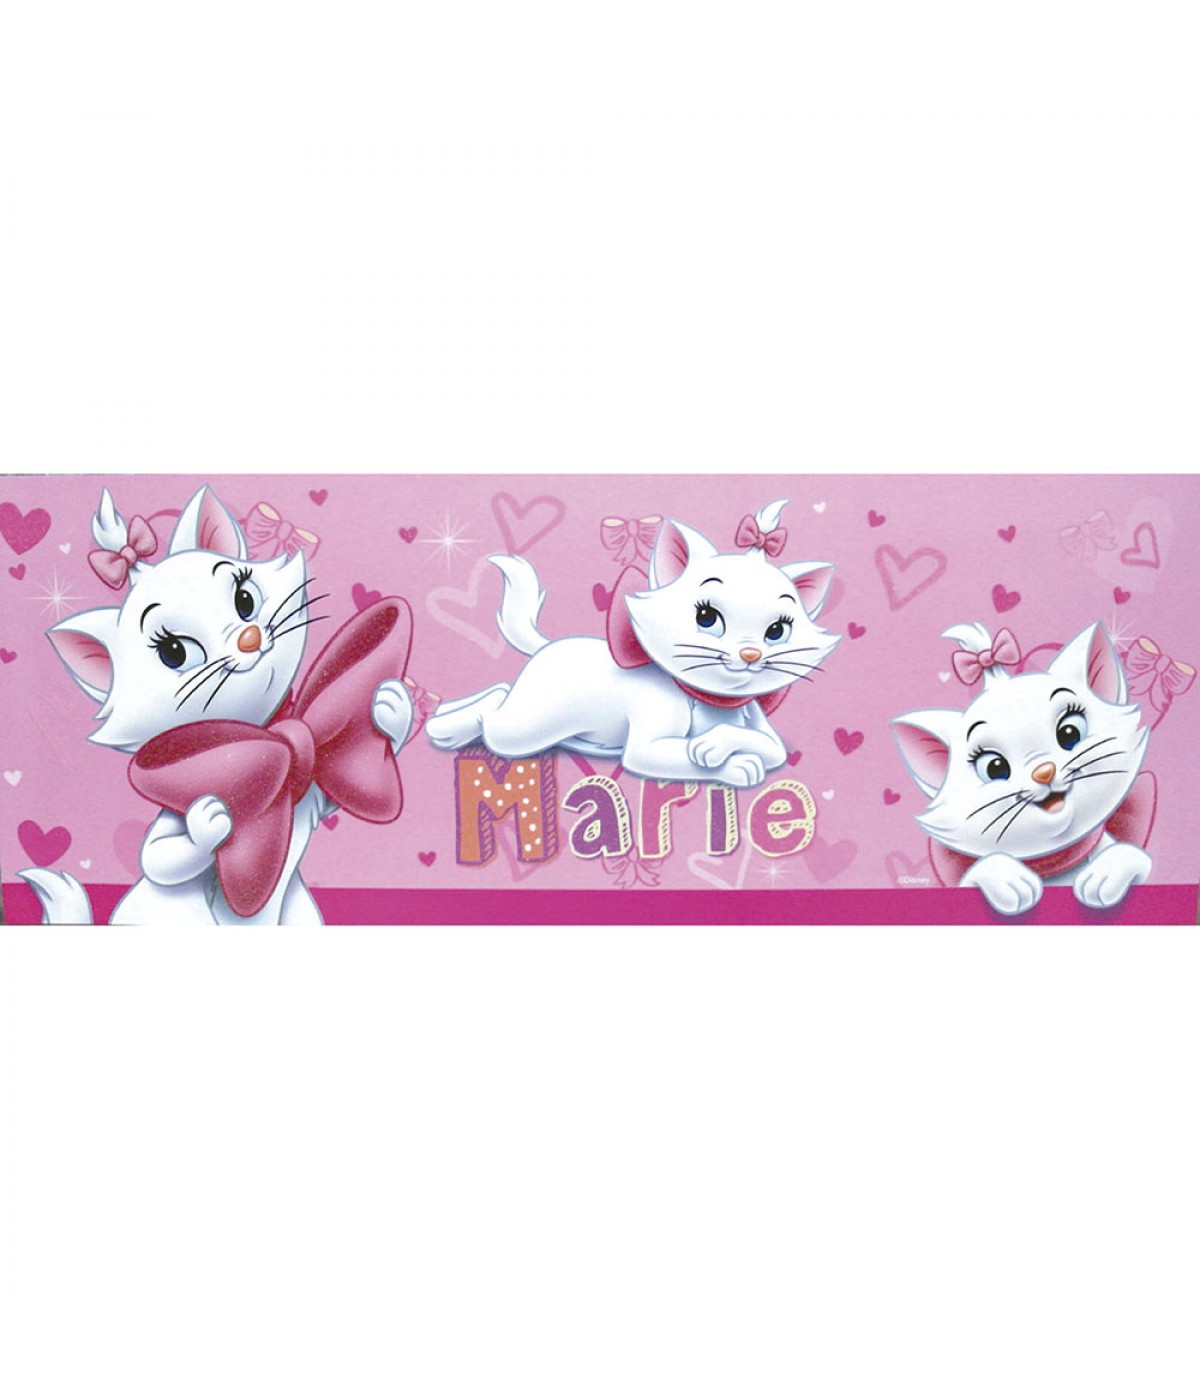 1 Adesivo Gatinha Marie - 9 cm - Alto Brilho